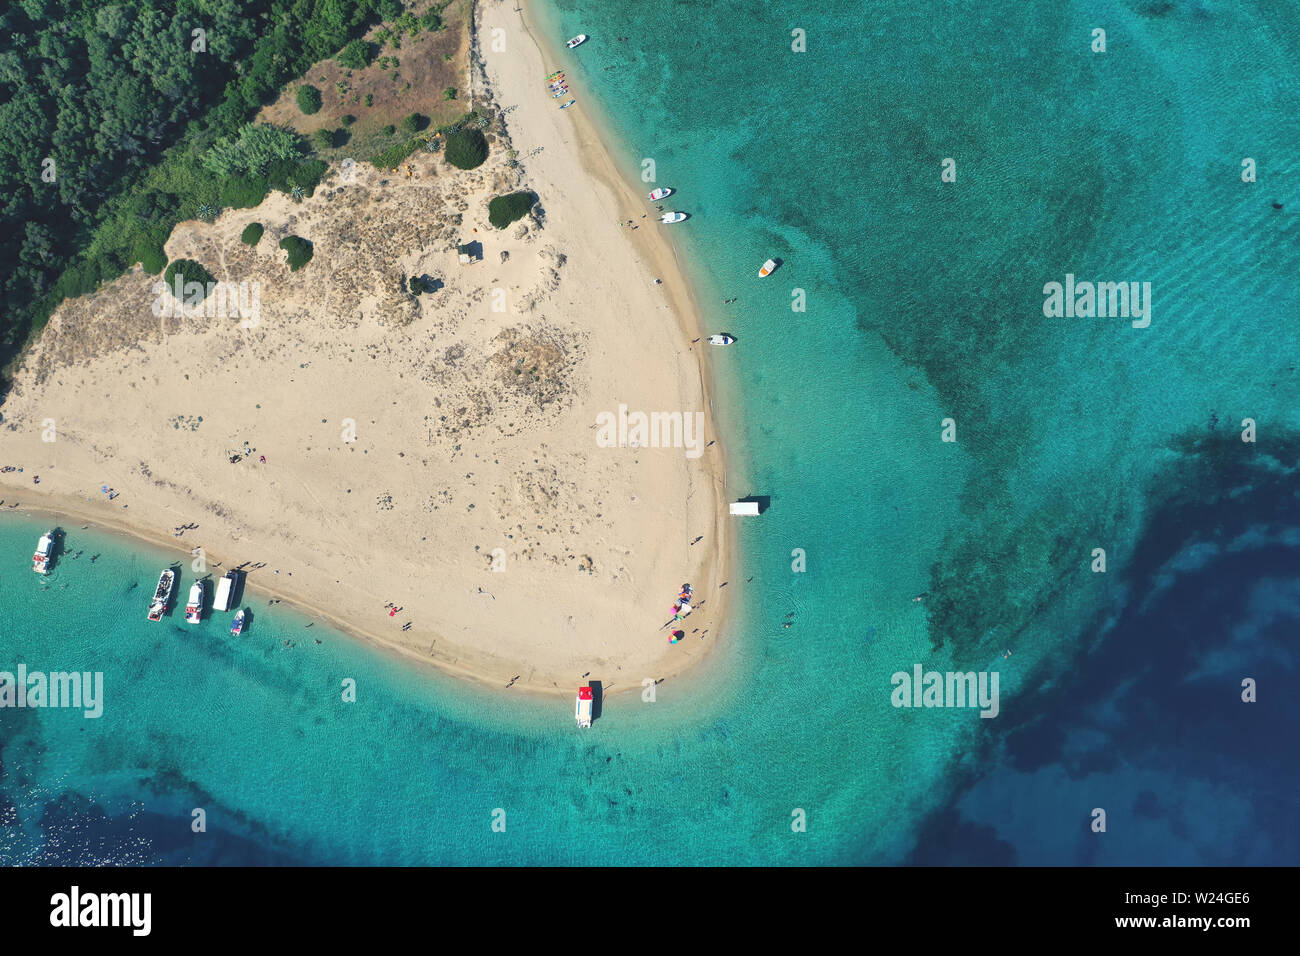 Antenna vista drone iconica piccola isola disabitata di Marathonisi con acqua chiara riva sabbiosa e vivaio naturale di mare Caretta-Caretta turt Foto Stock